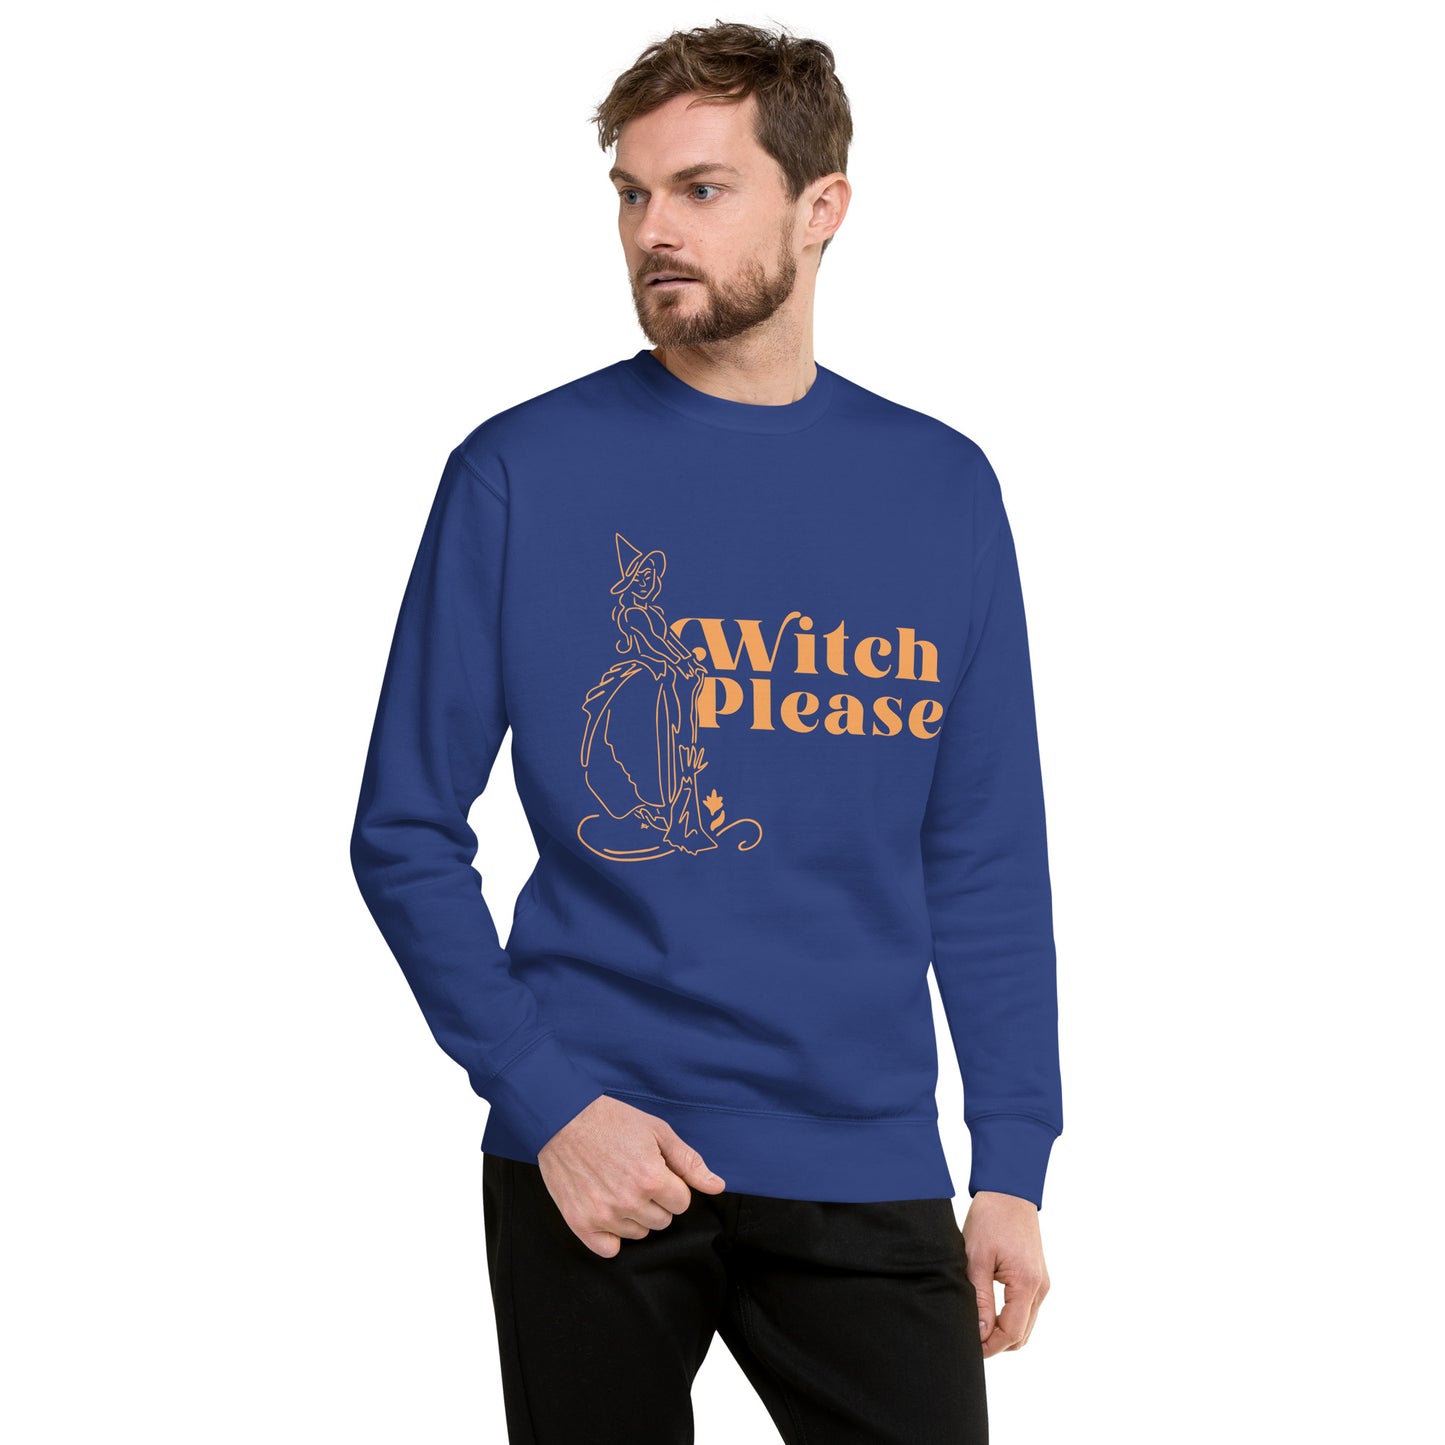 Witch Please Premium Sweatshirt